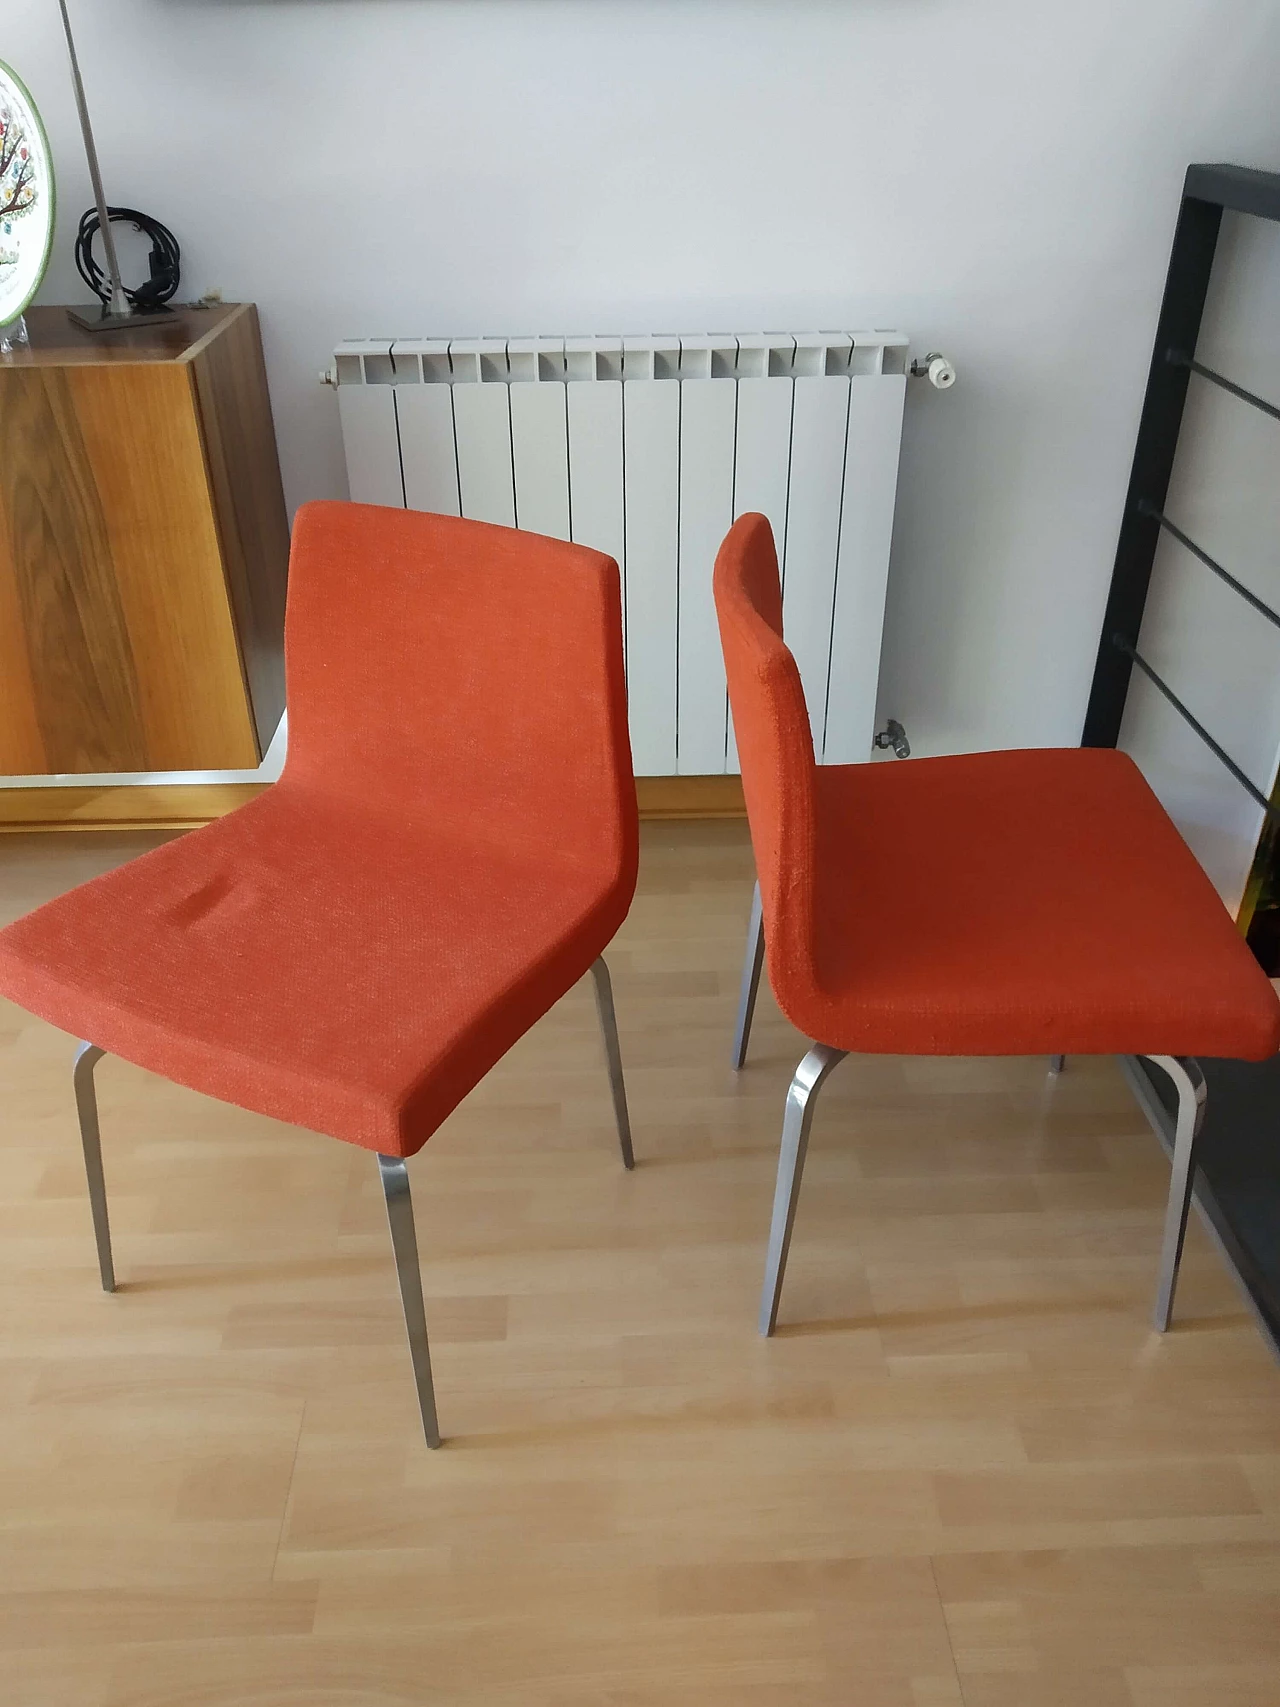 4 Hella Chairs by Mauro Lipparini for MisuraEmme 1477297